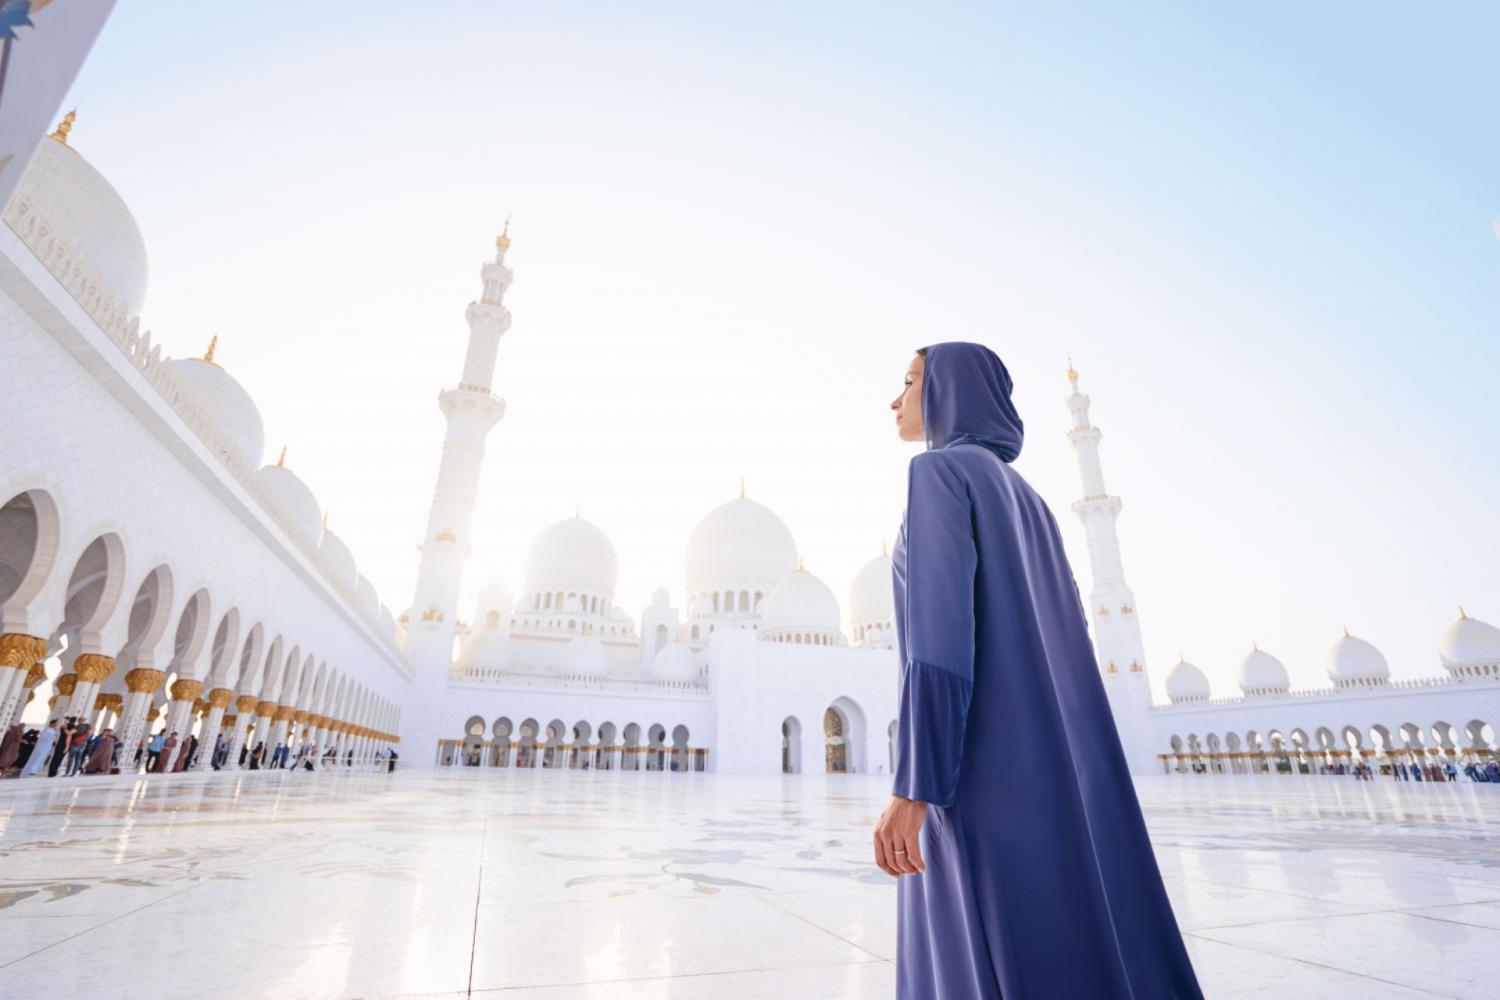 Abu Dhabi Mosque & Ferrari World from Dubai